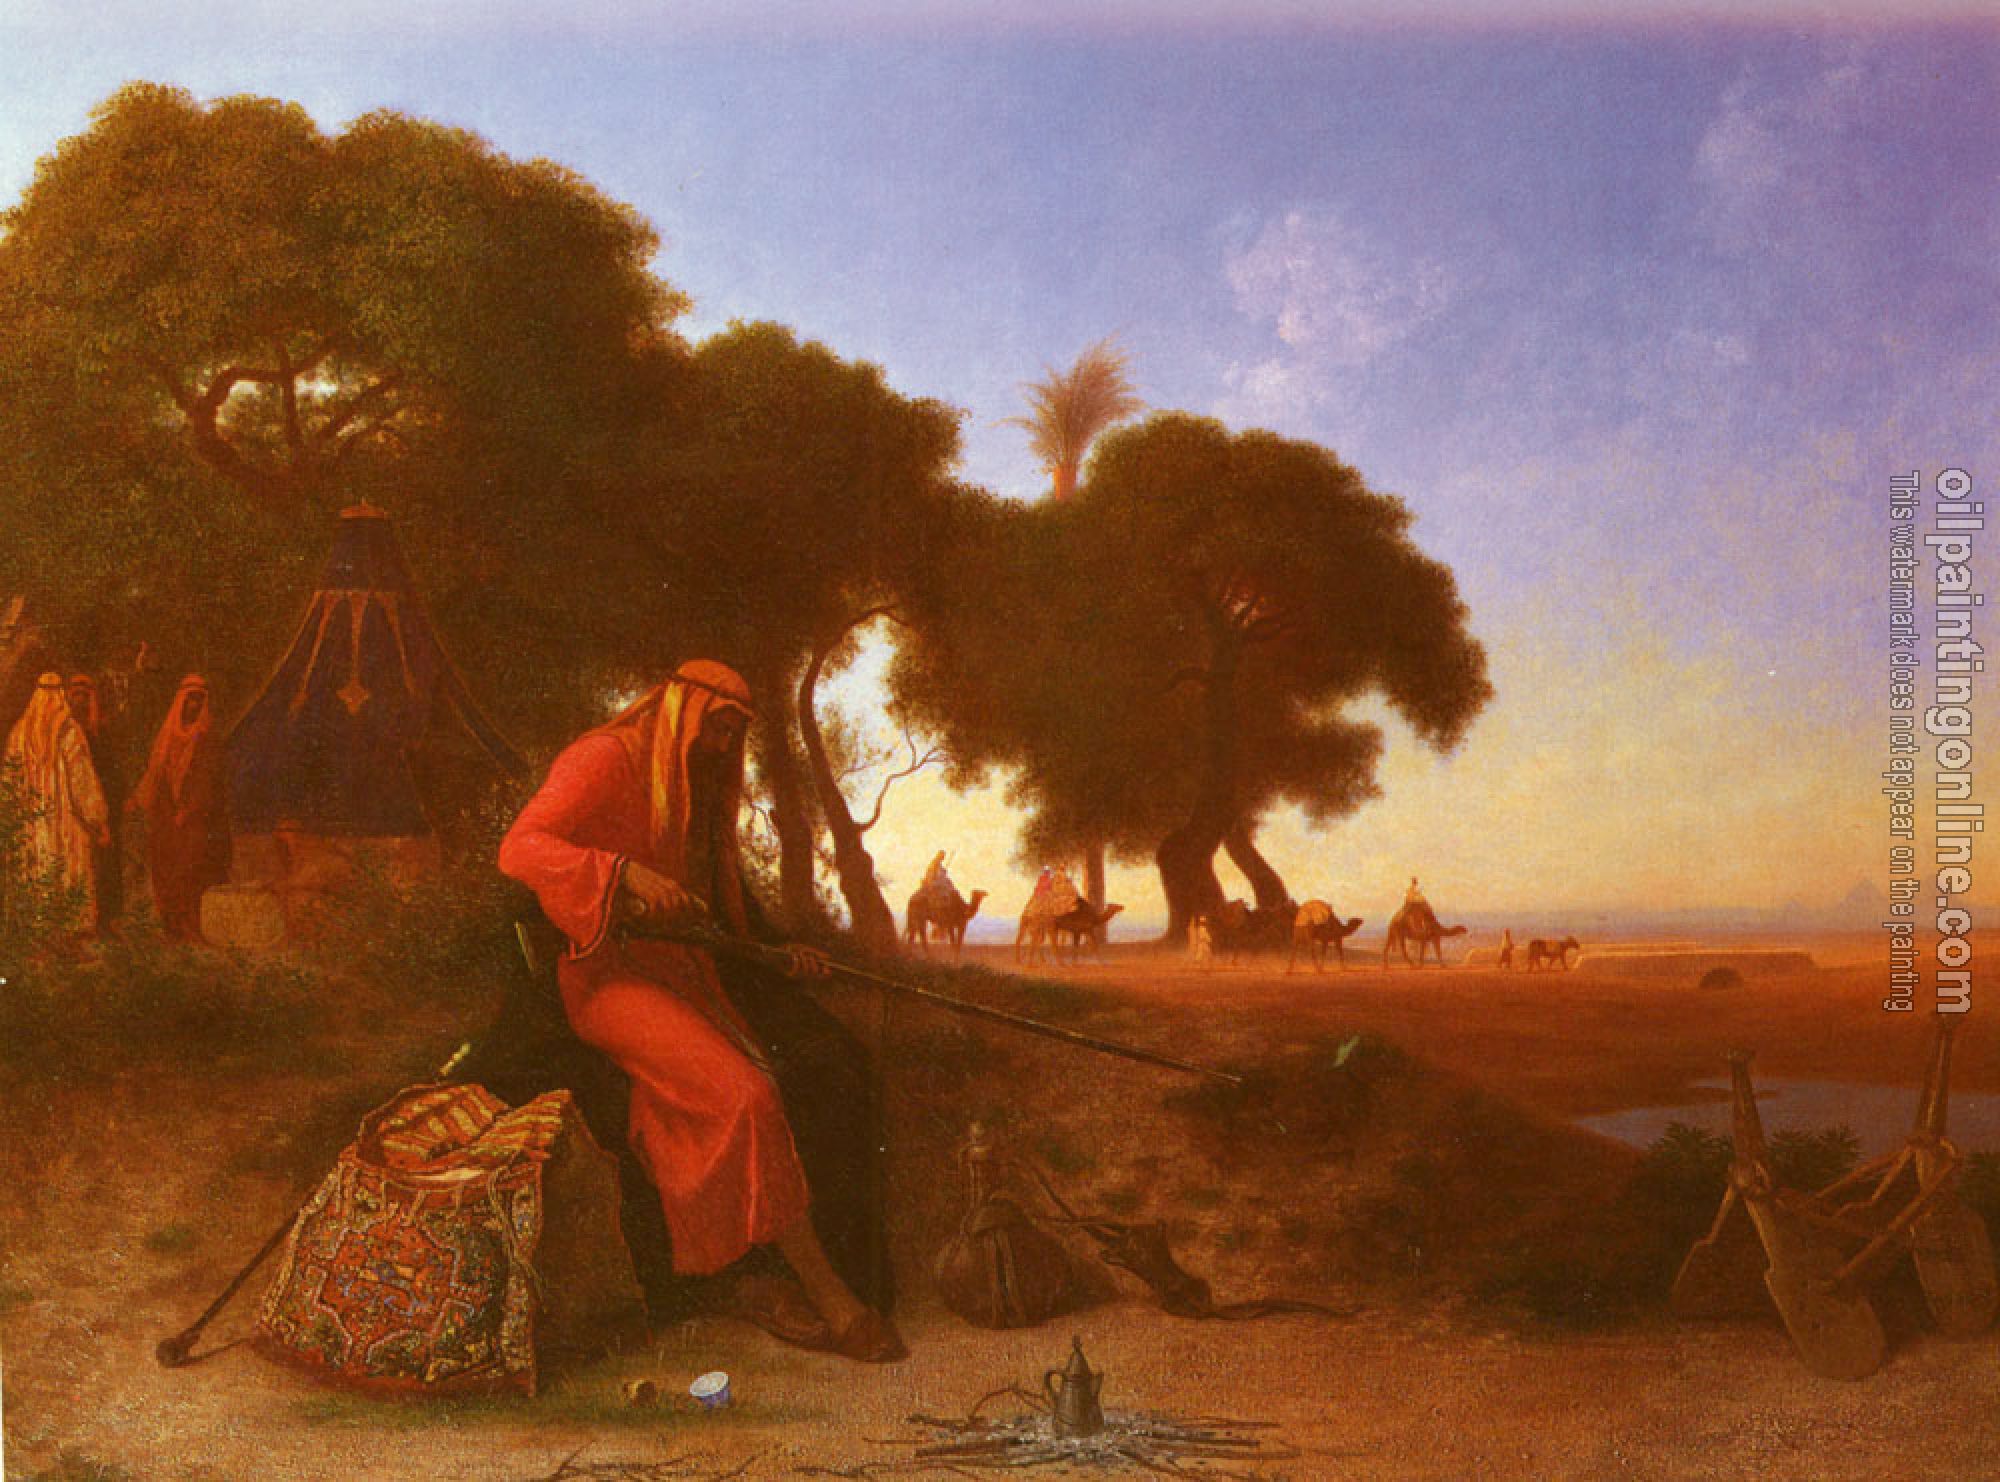 Frere, Charles Theodore - An Arab Encampment